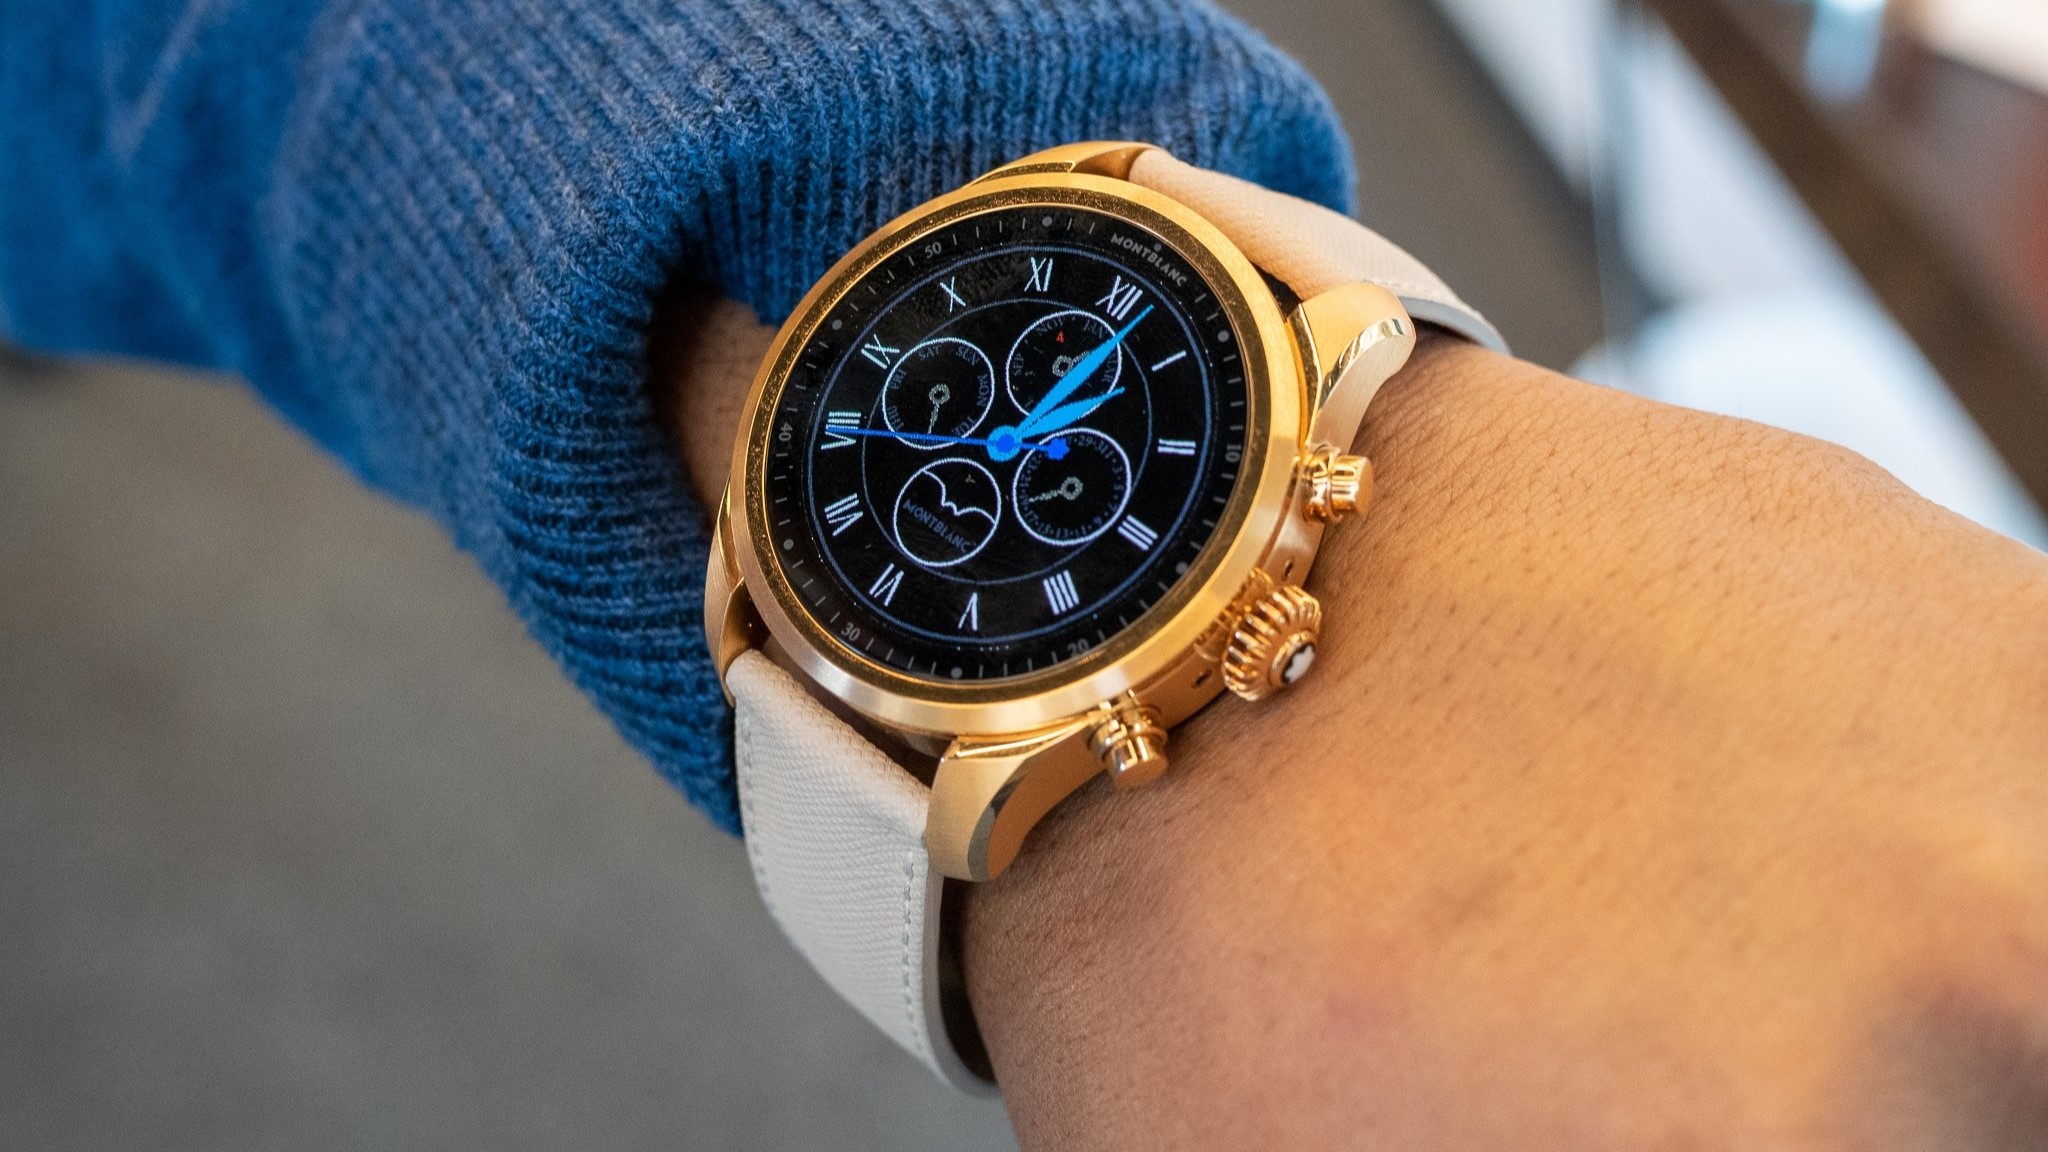 Montblanc Summit 2+ Wear OS smartwatch worn on a wrist.